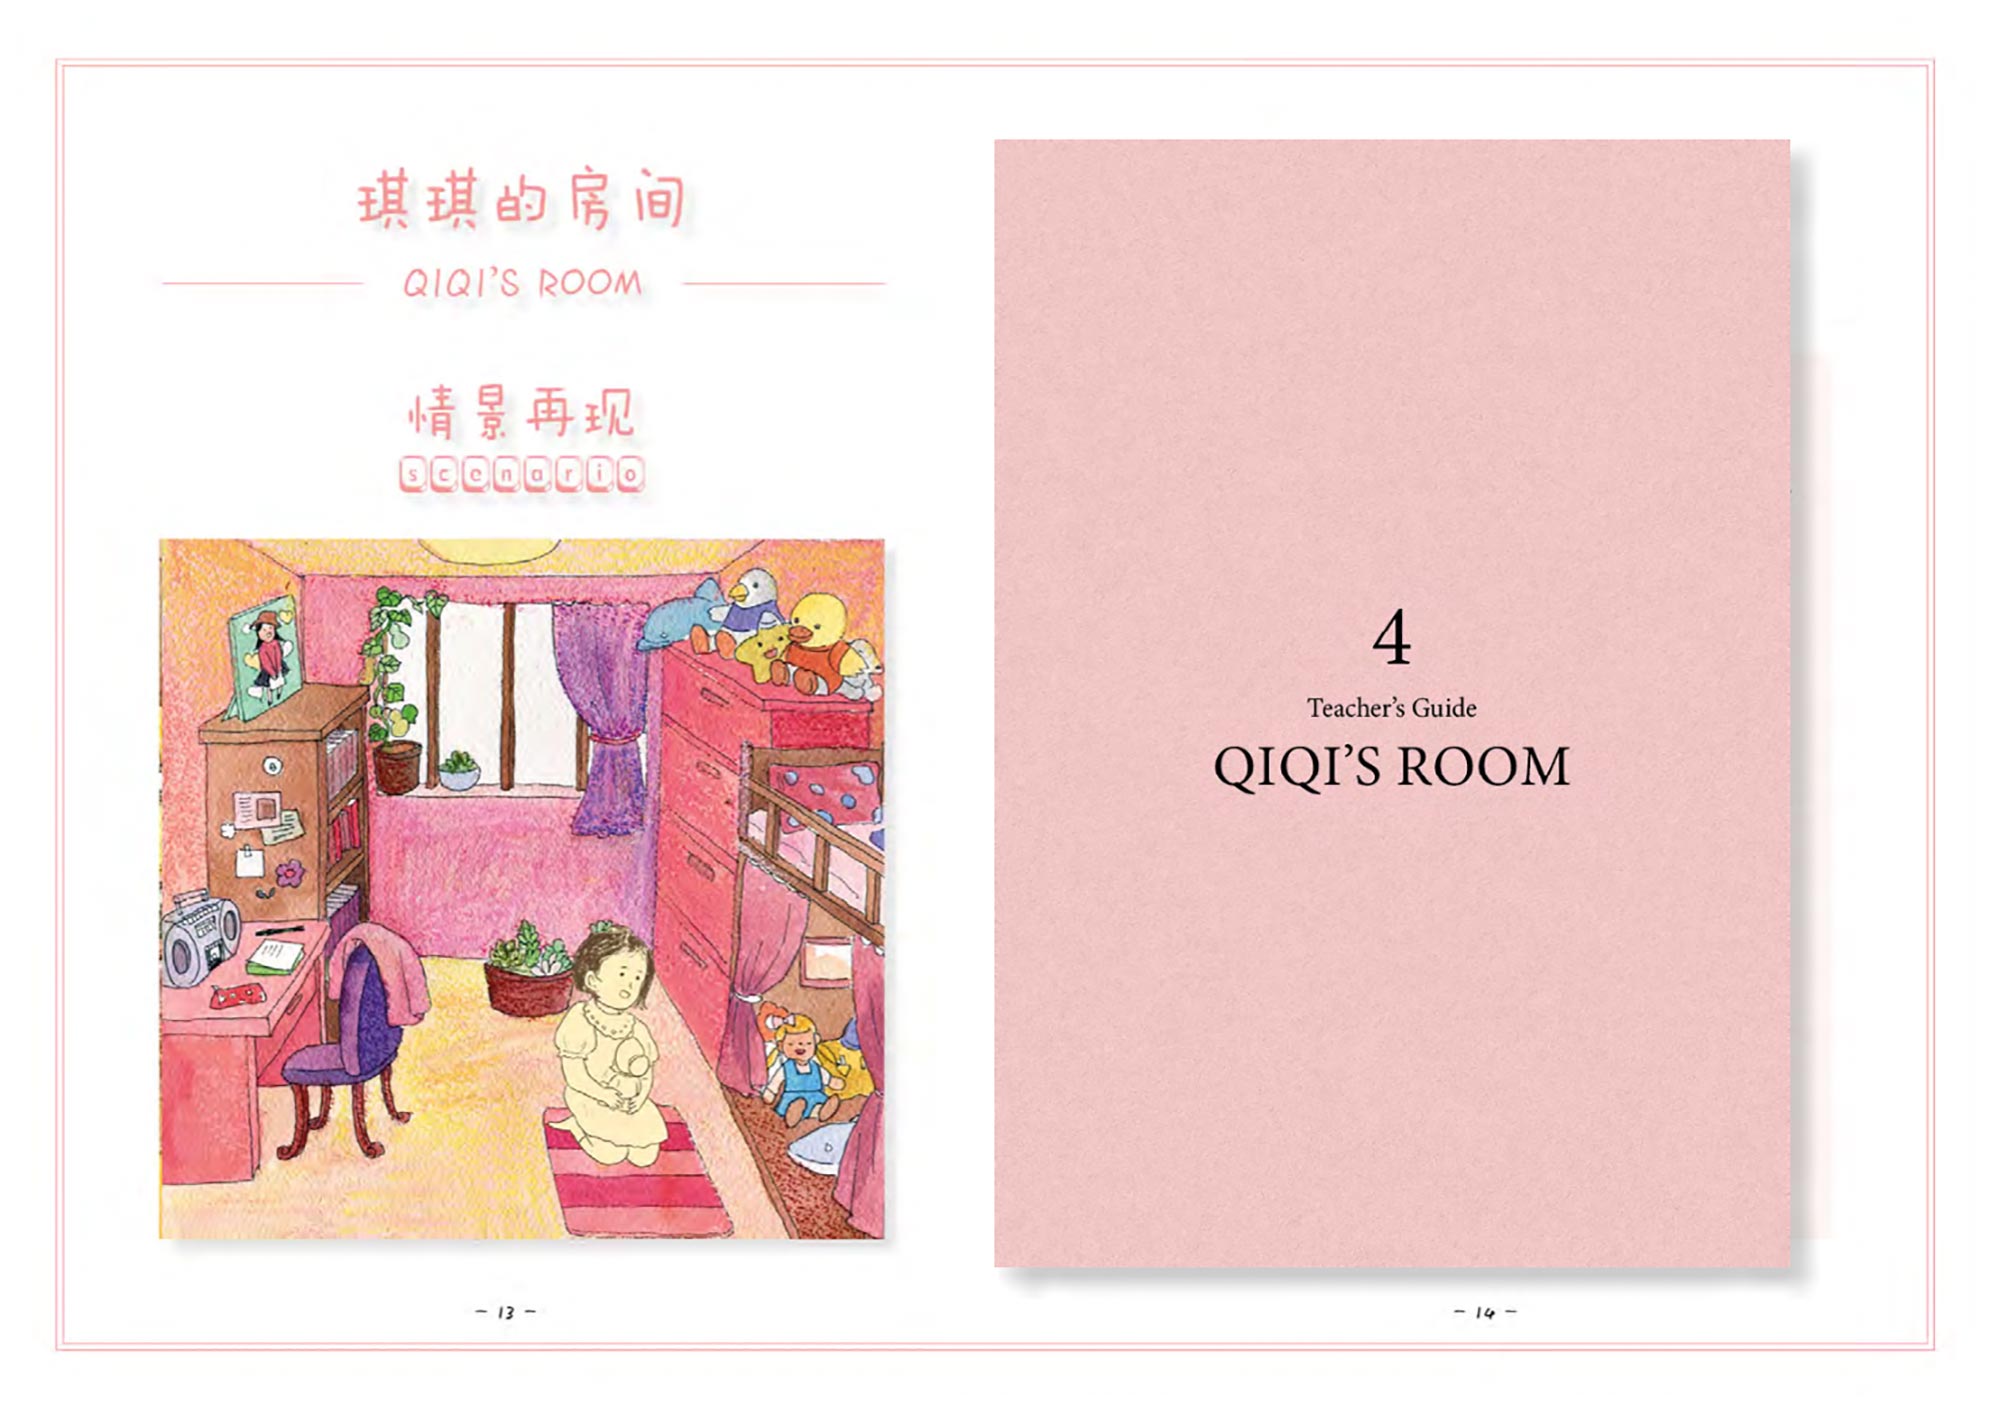 4, Qiqi's Room